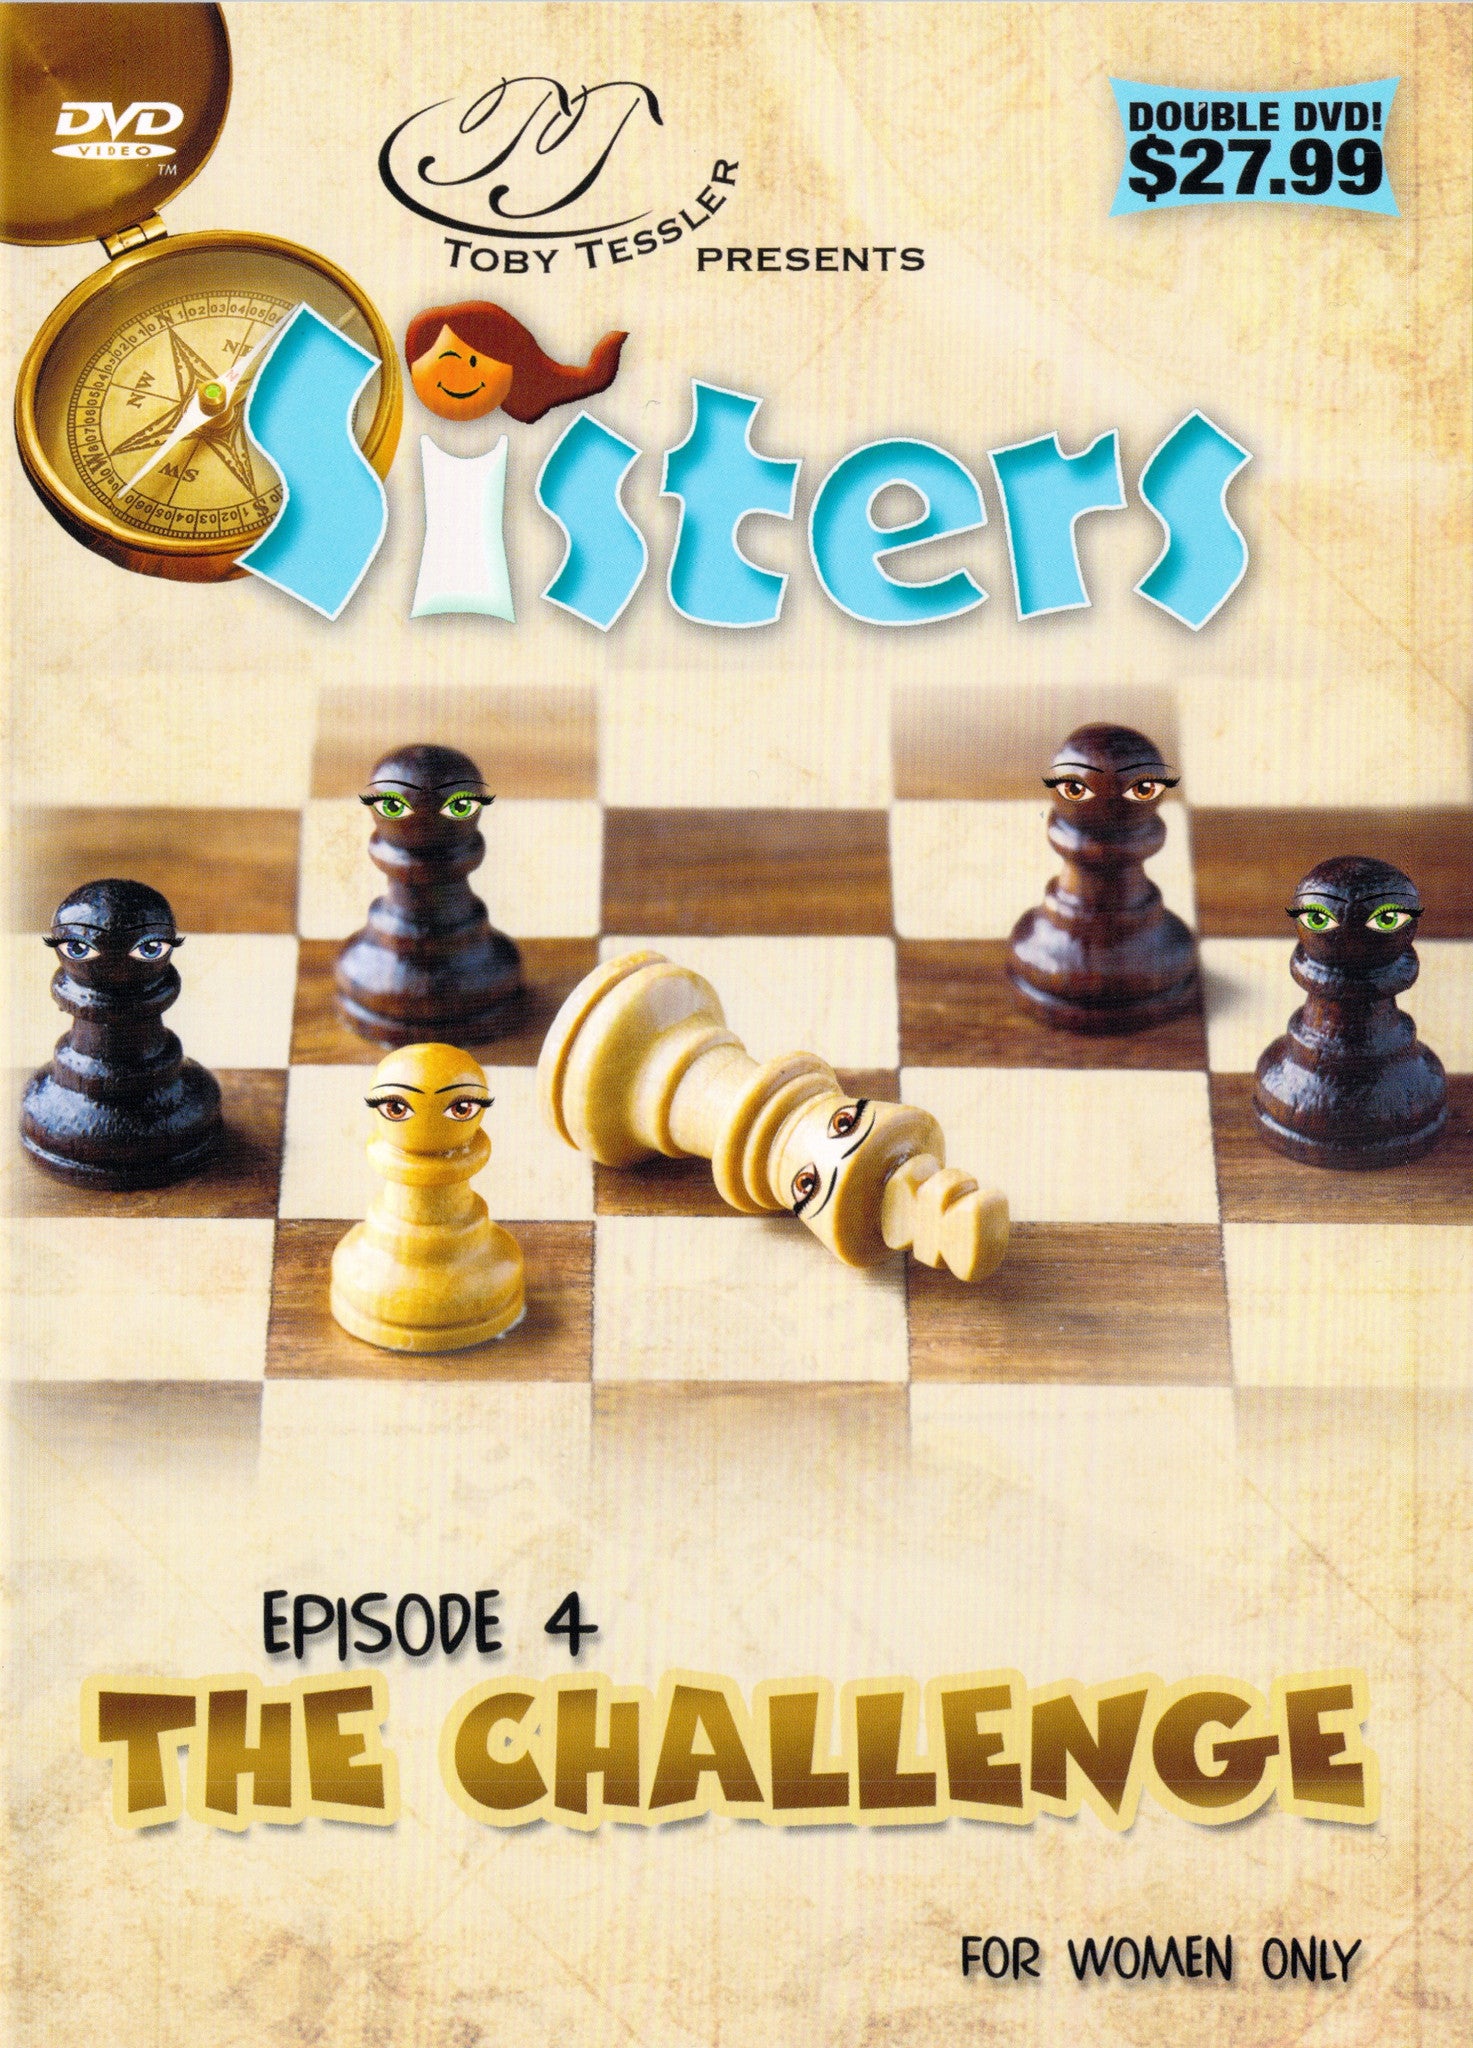 טובי טסלר - אחיות פרק 4 - האתגר